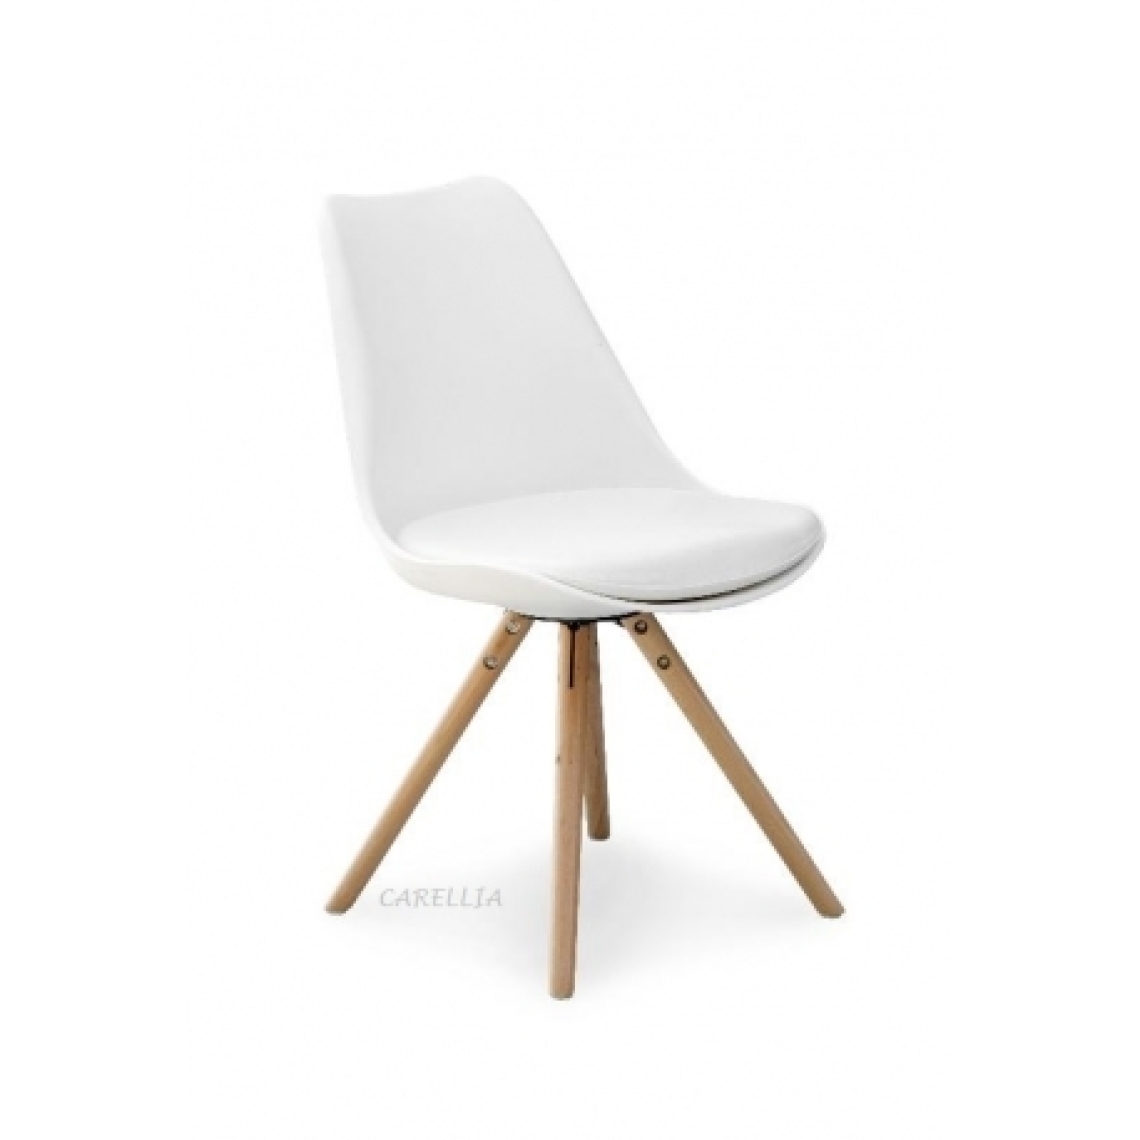 Carellia - CLAIRE lot de 2 chaises scandinave - Blanc - Chaises